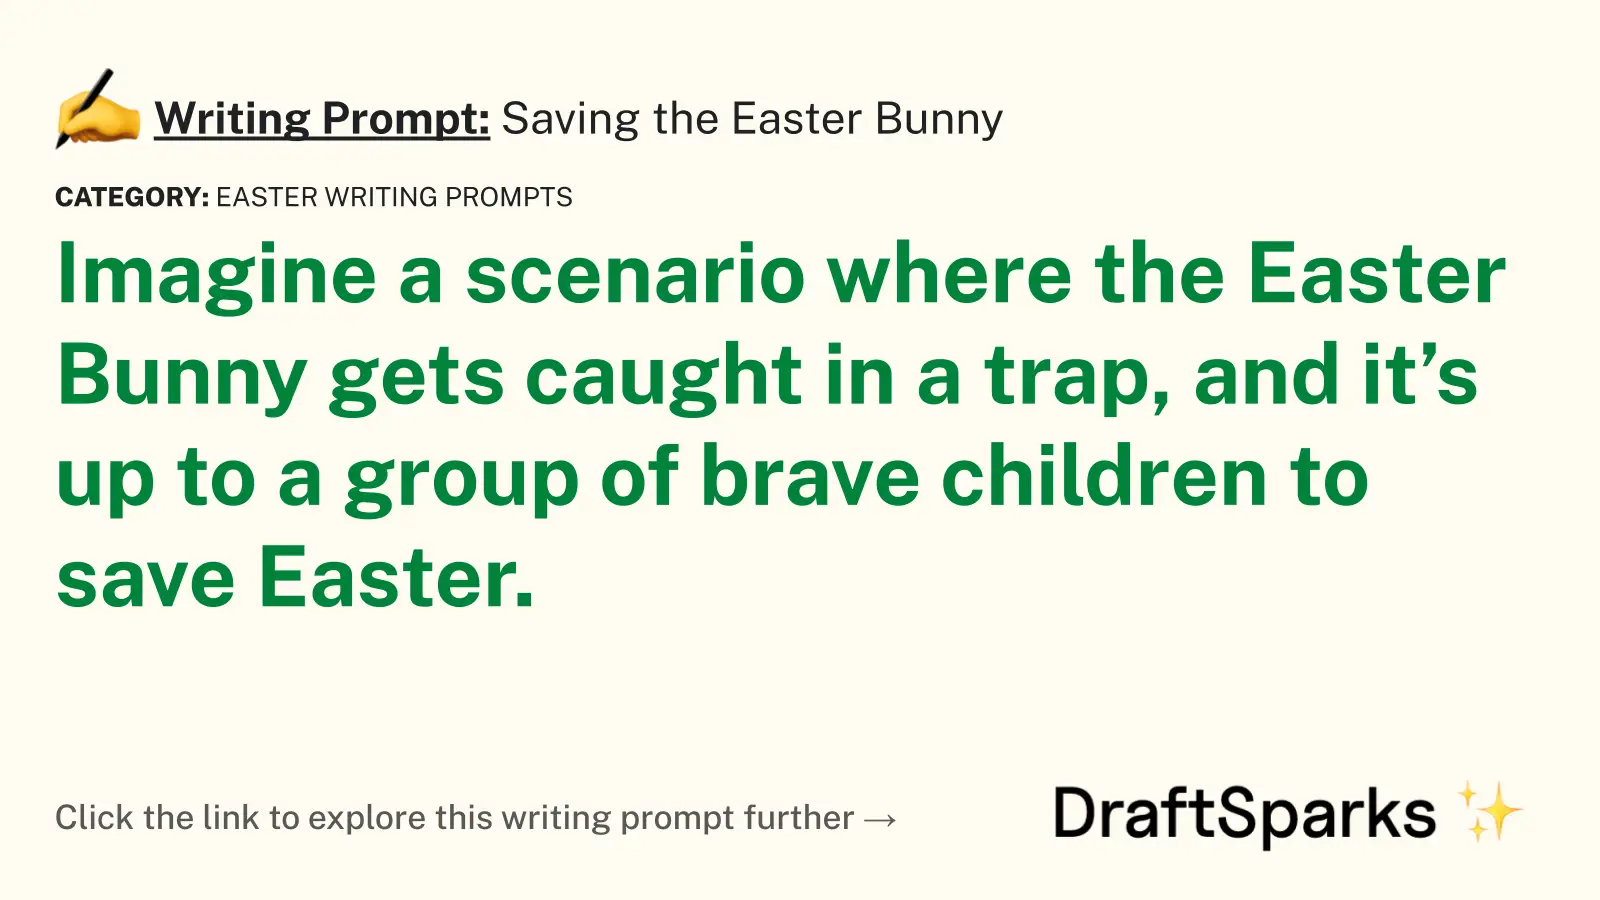 Saving the Easter Bunny